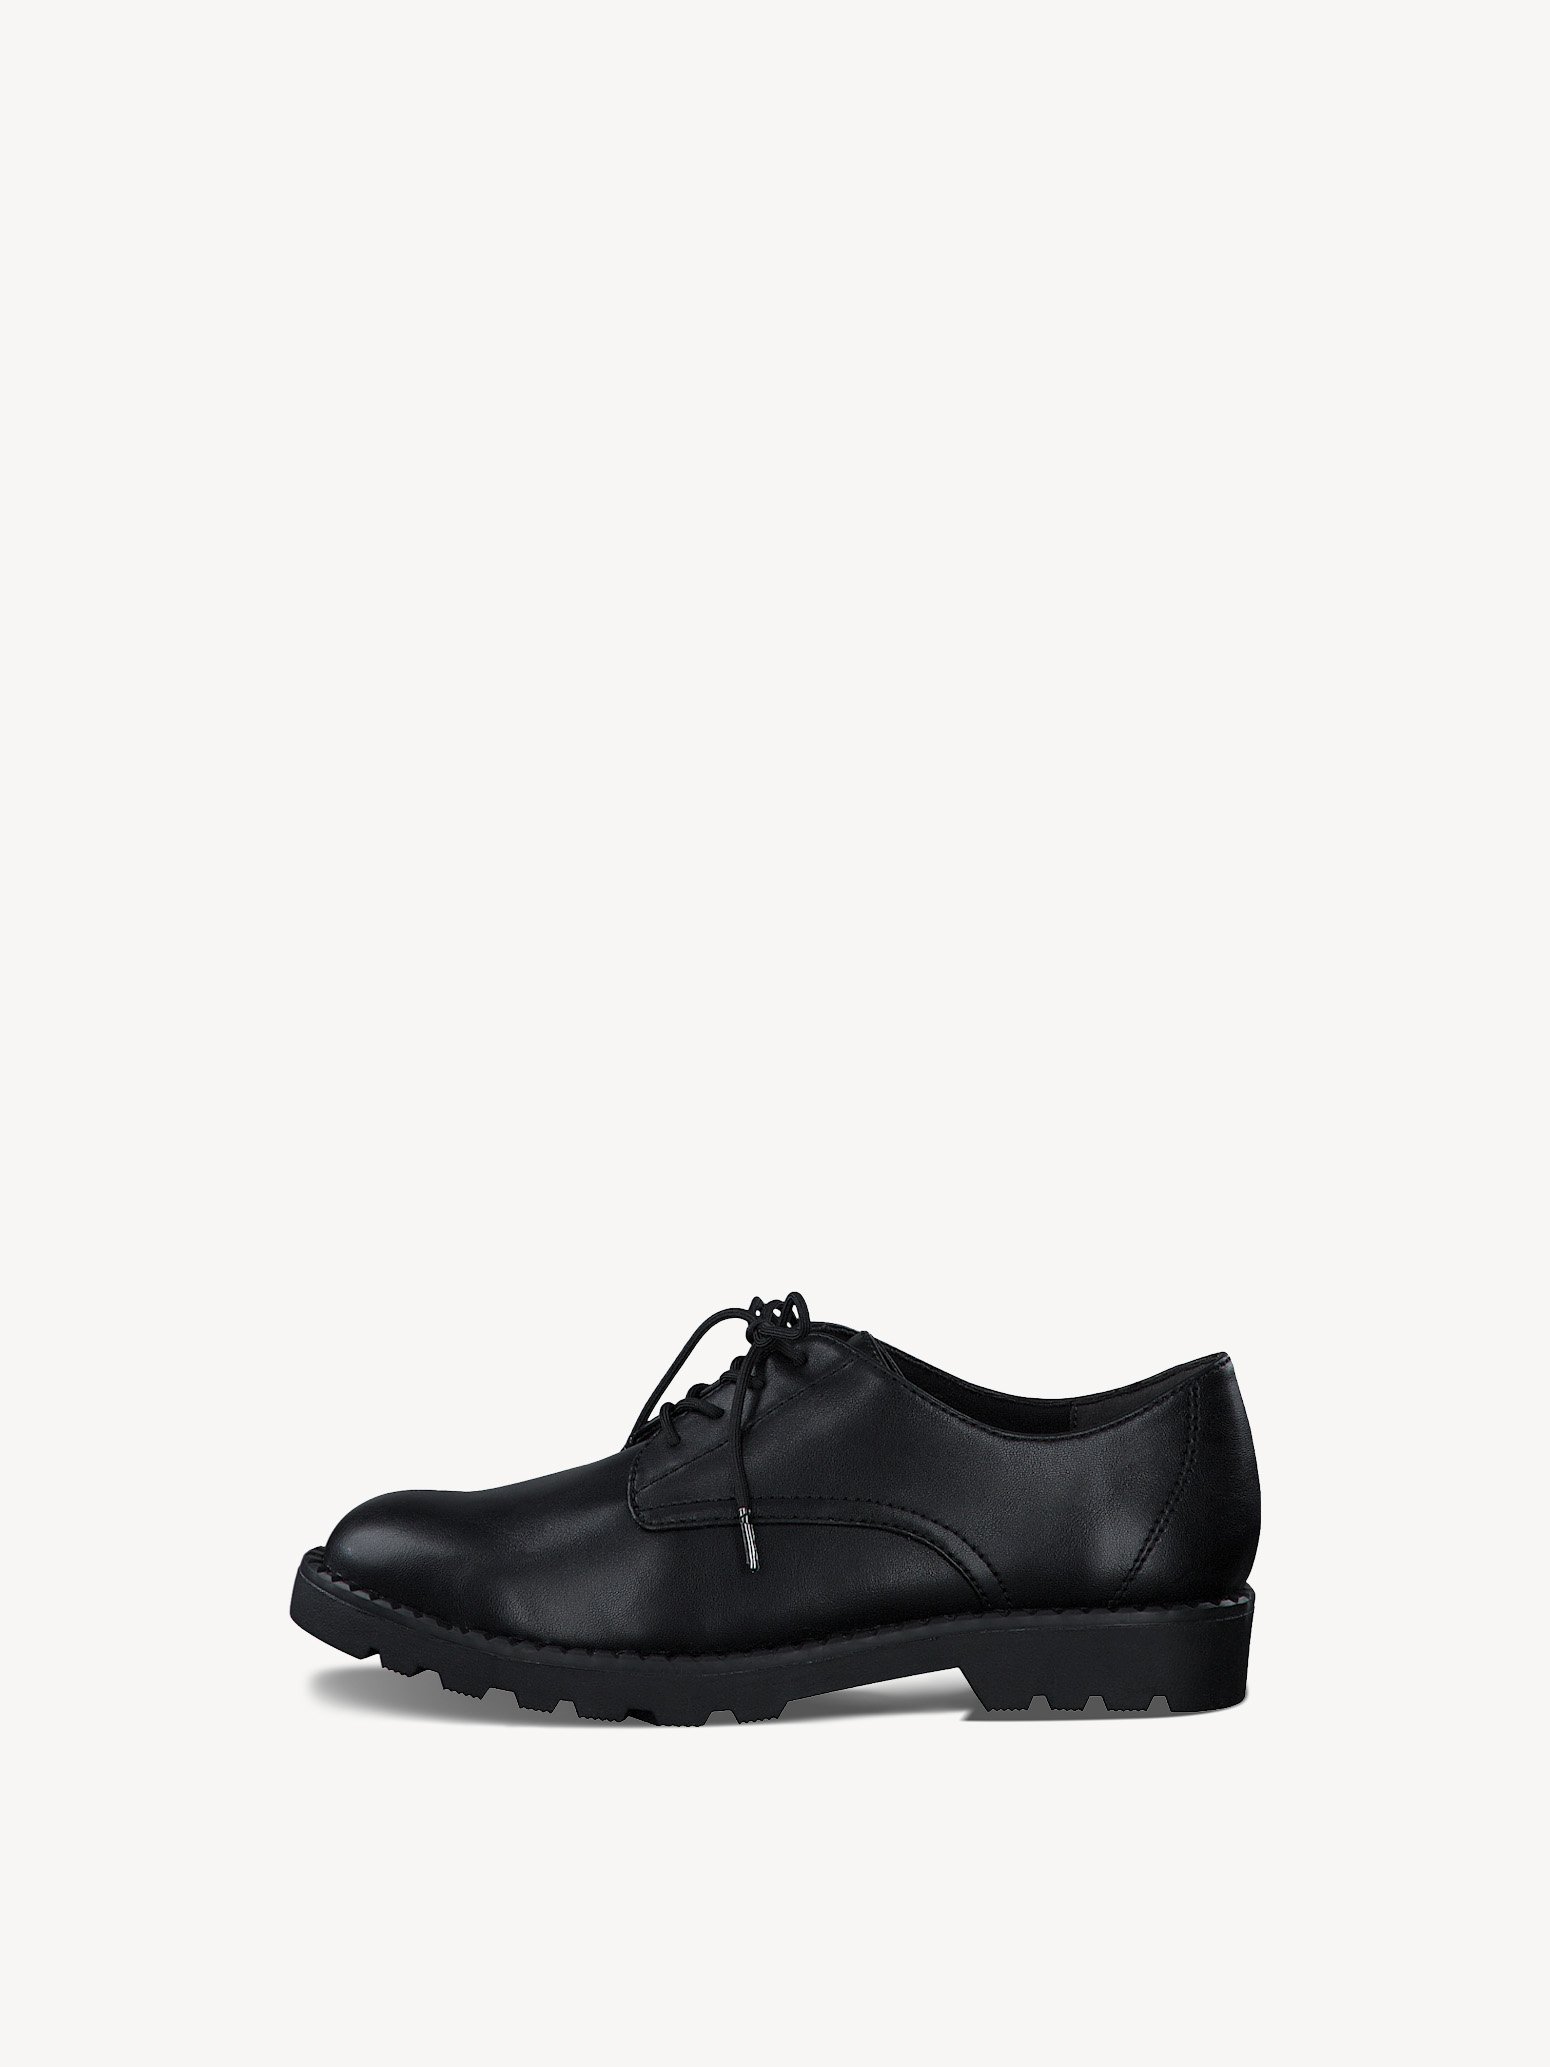 Low shoes - black